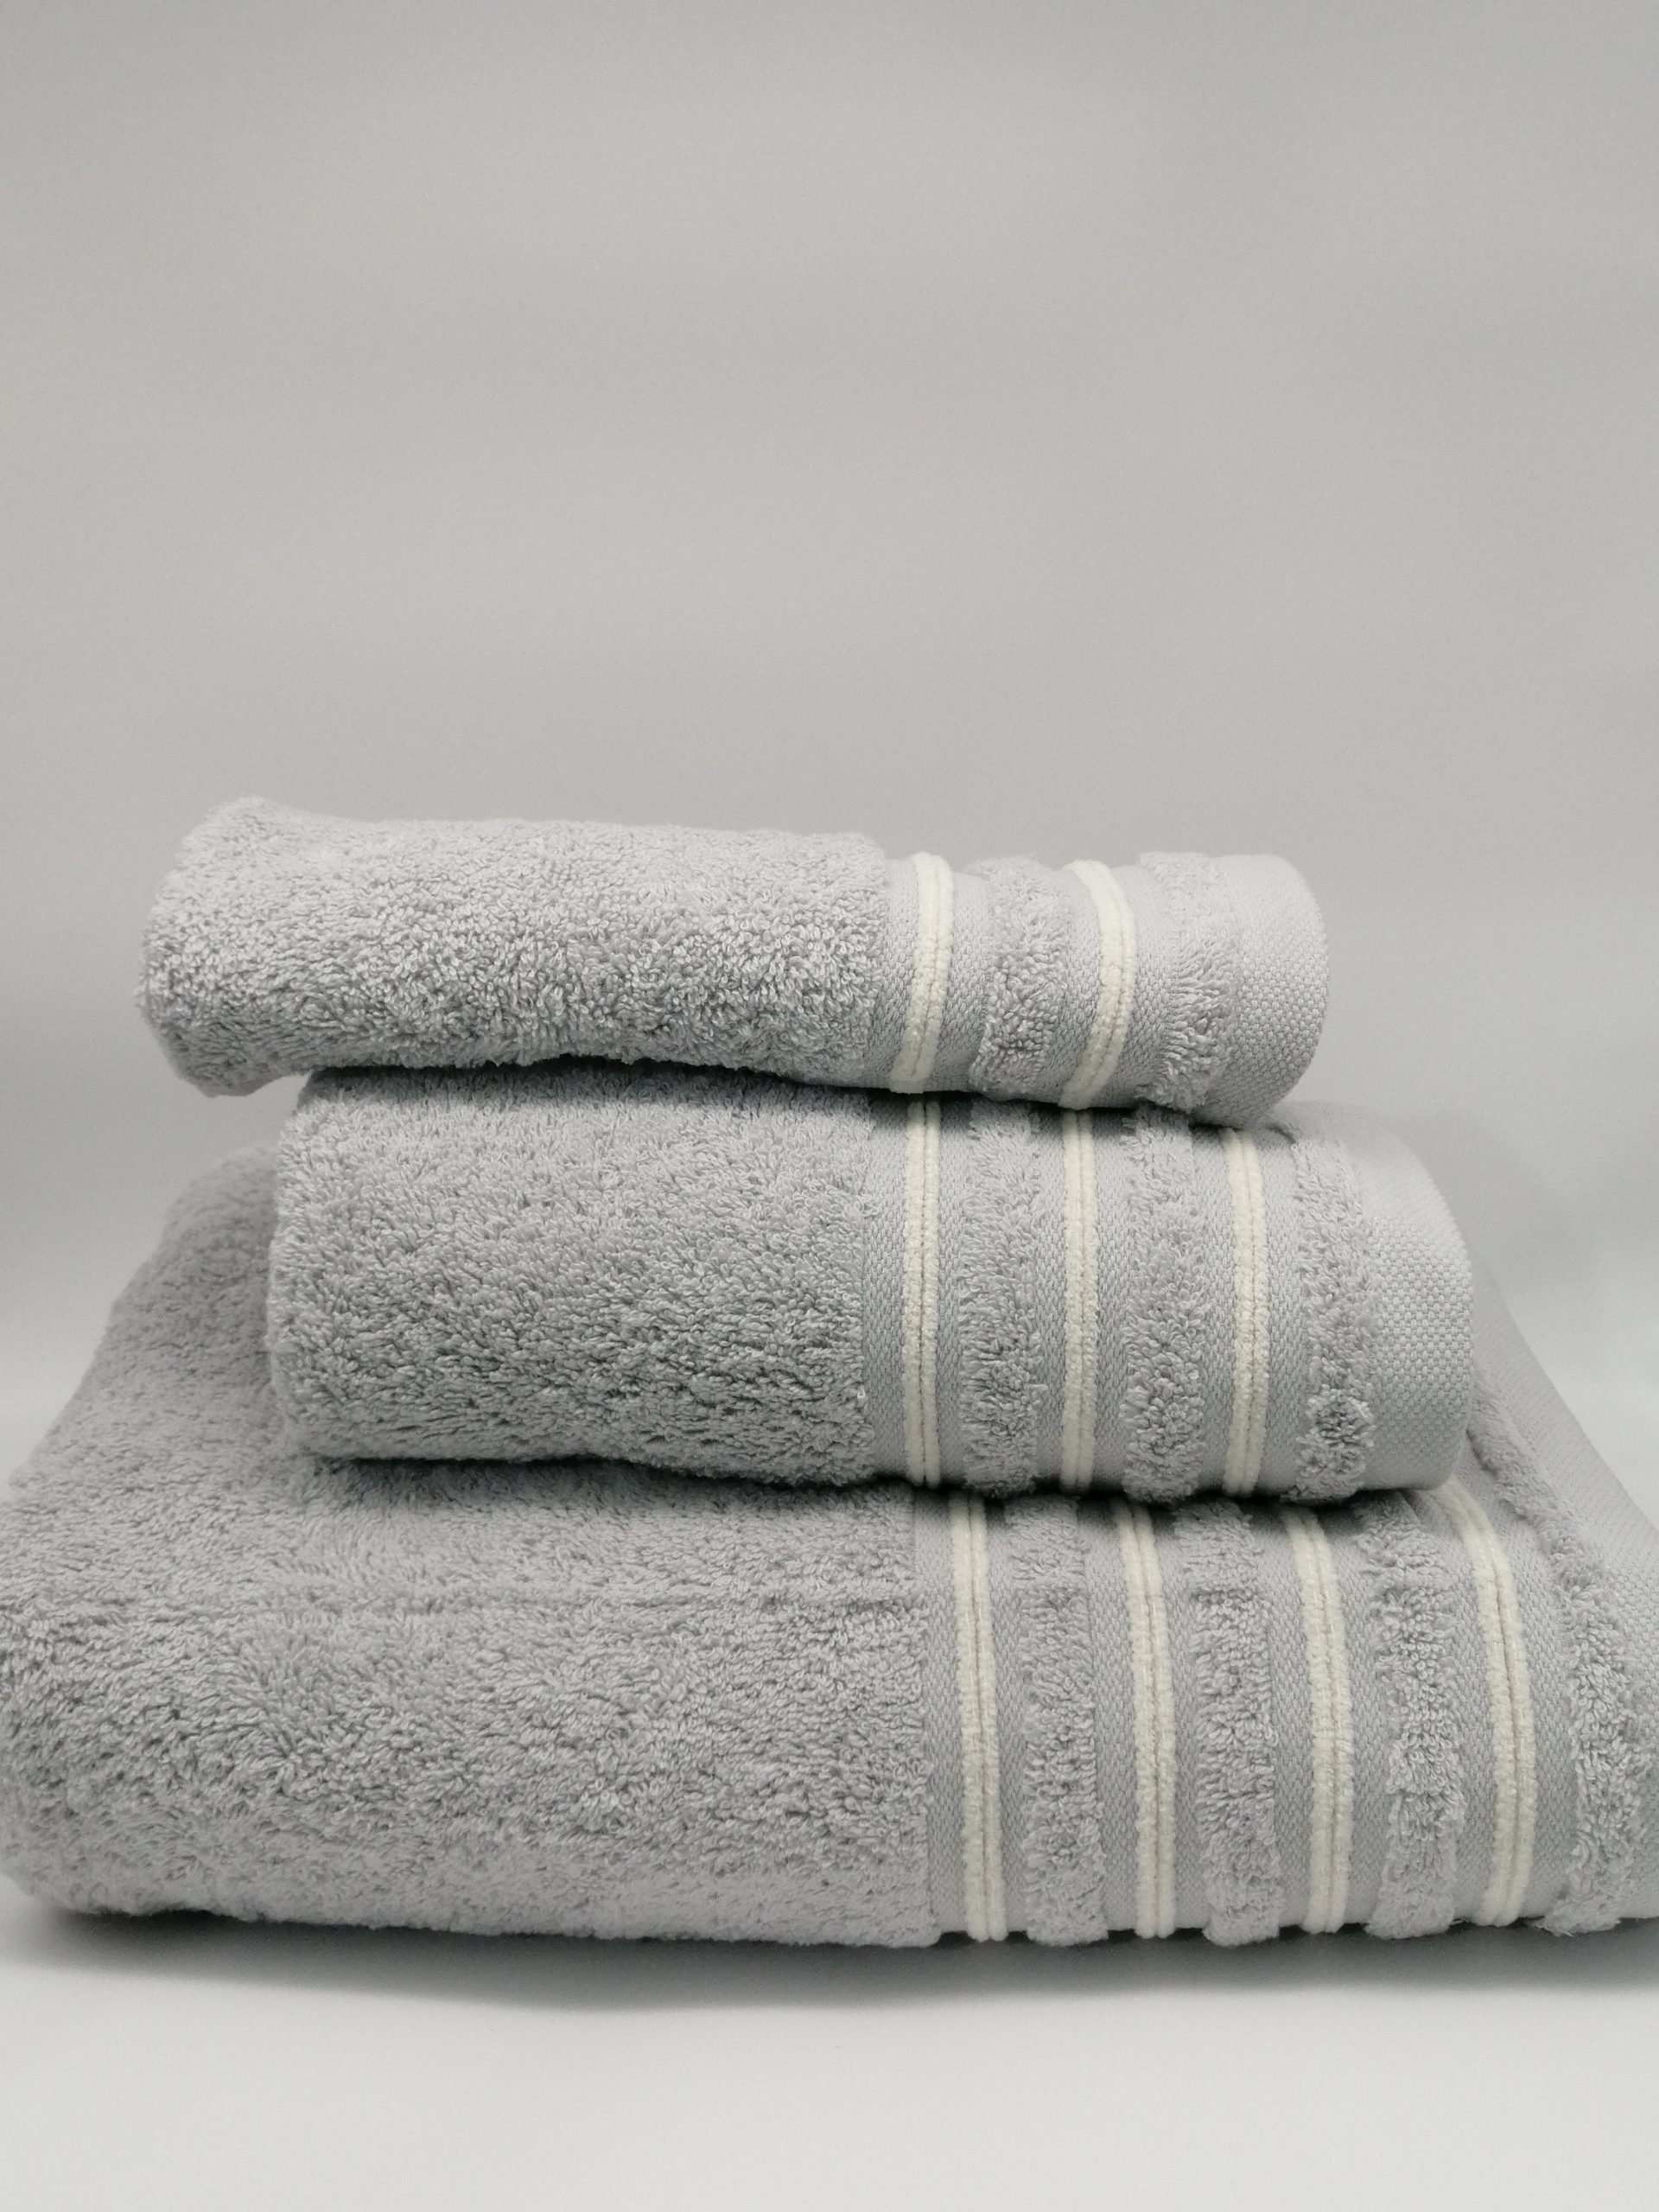 Juego de toallas Blanco 100% algodón - Tienda Lartextil